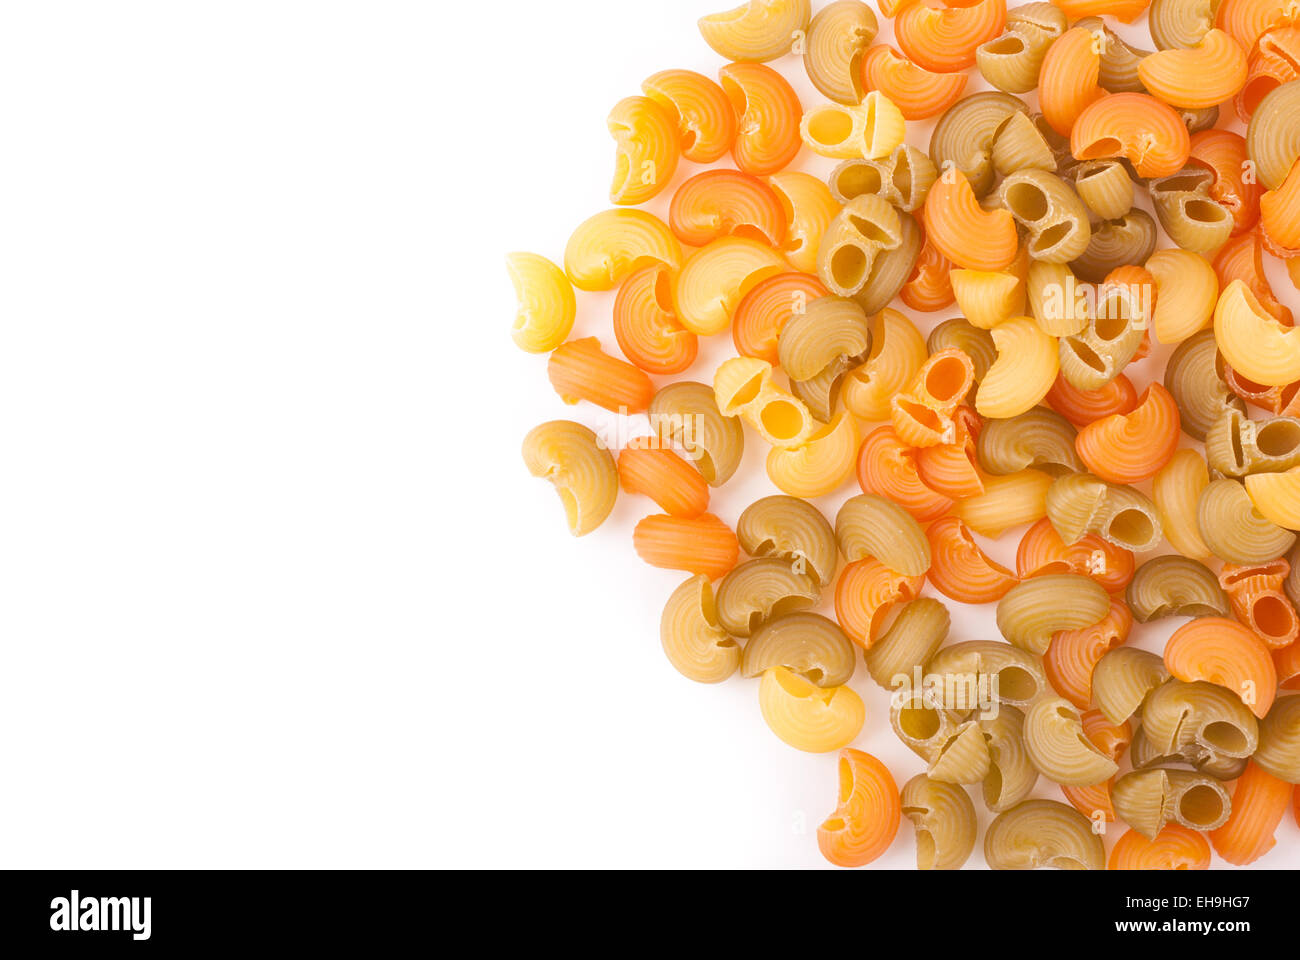 Pasta ist auf einem weißen Hintergrund verstreut. Stockfoto